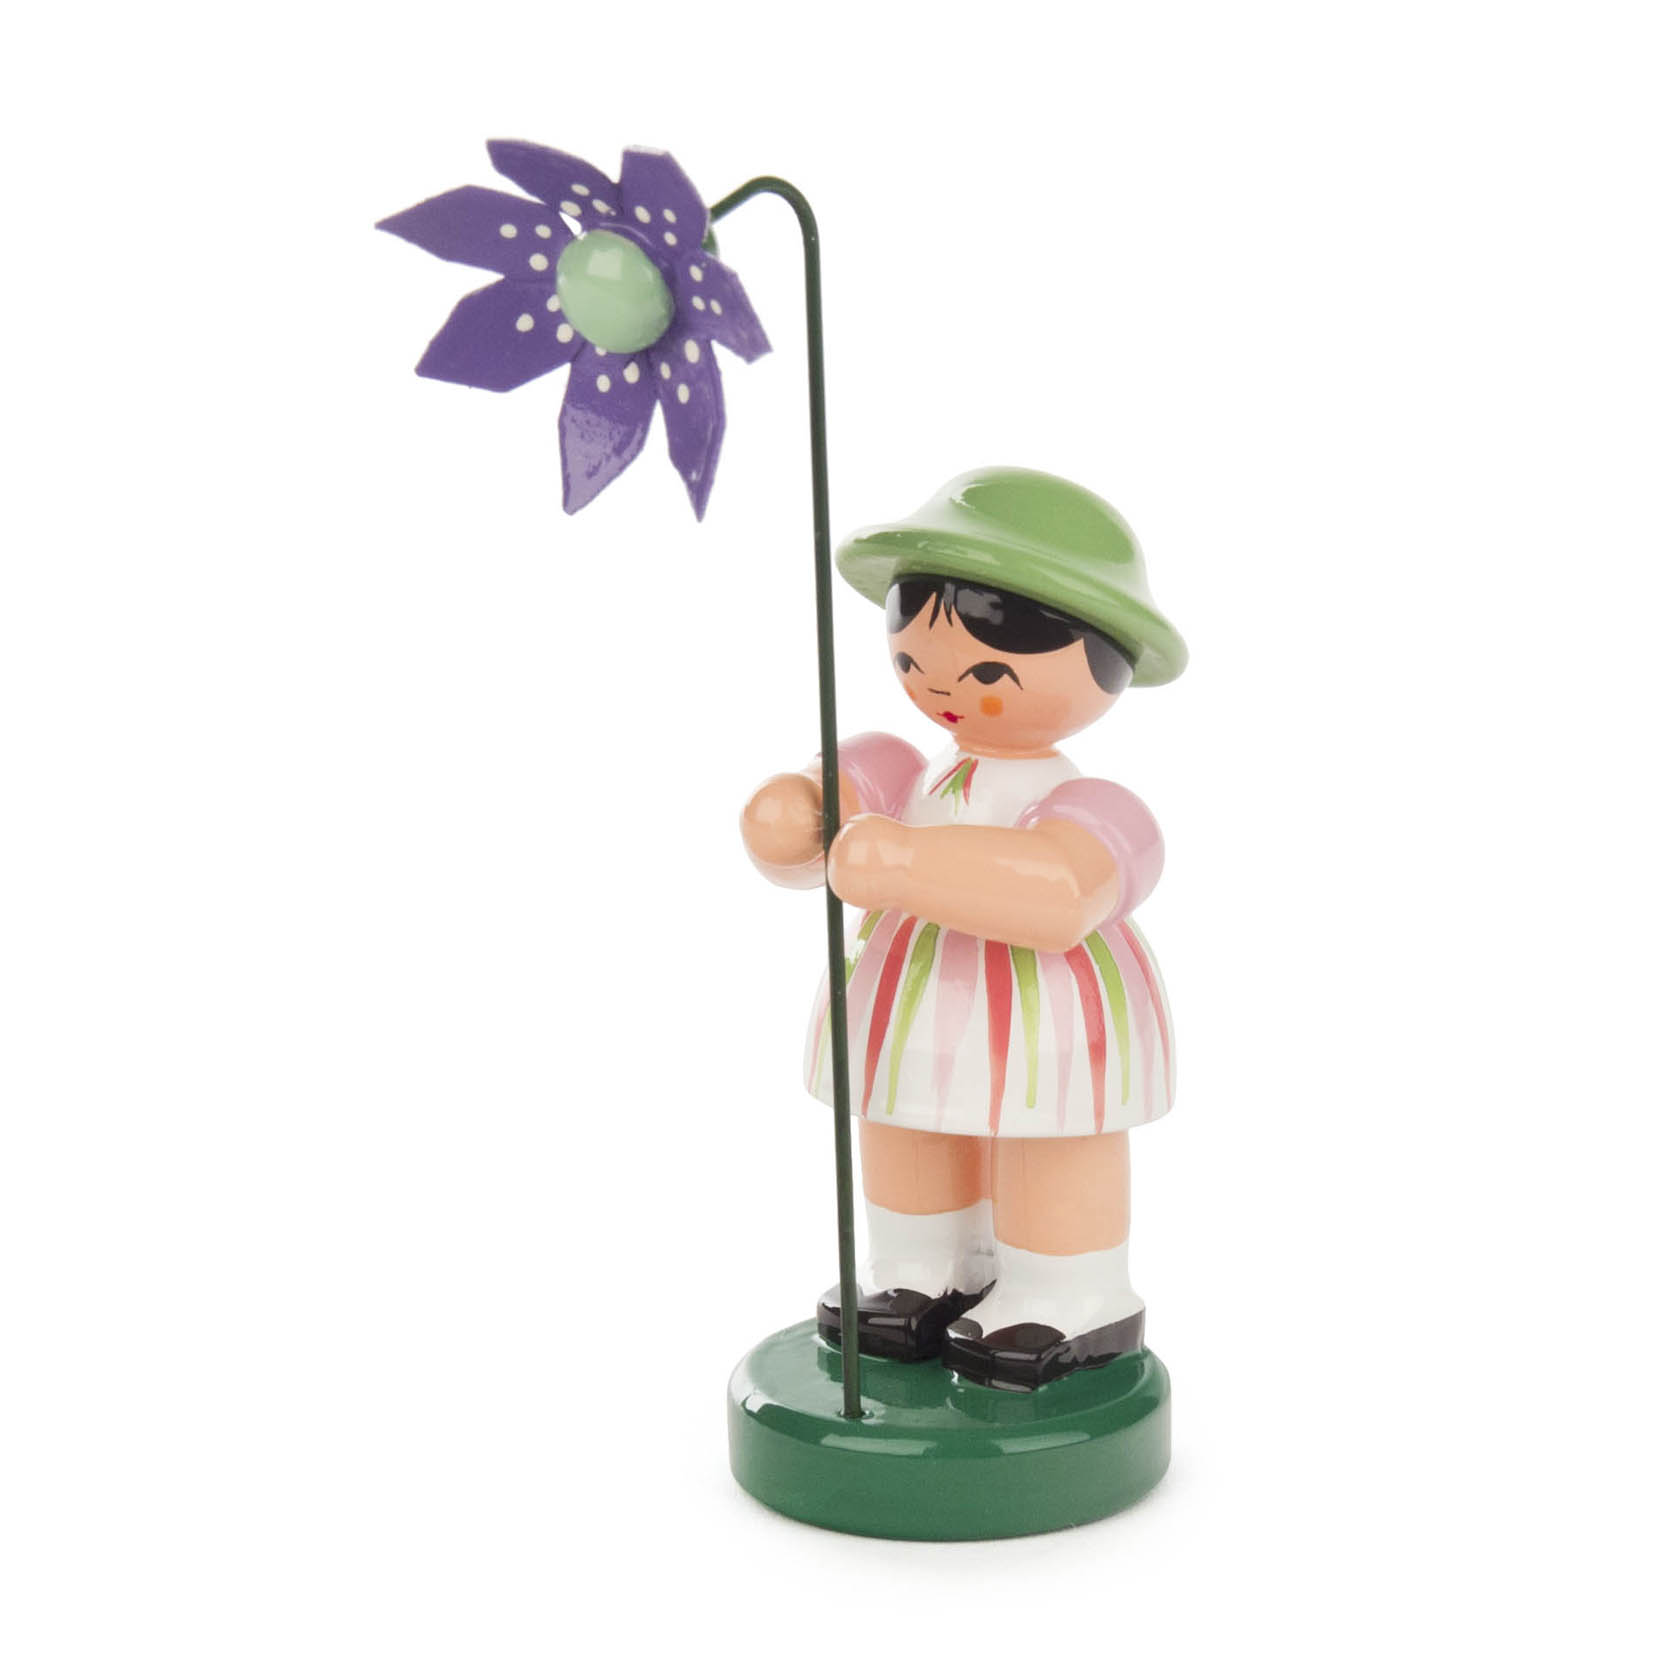 Blumenmädchen hell gestreift / grün, Blume violett im Dregeno Online Shop günstig kaufen